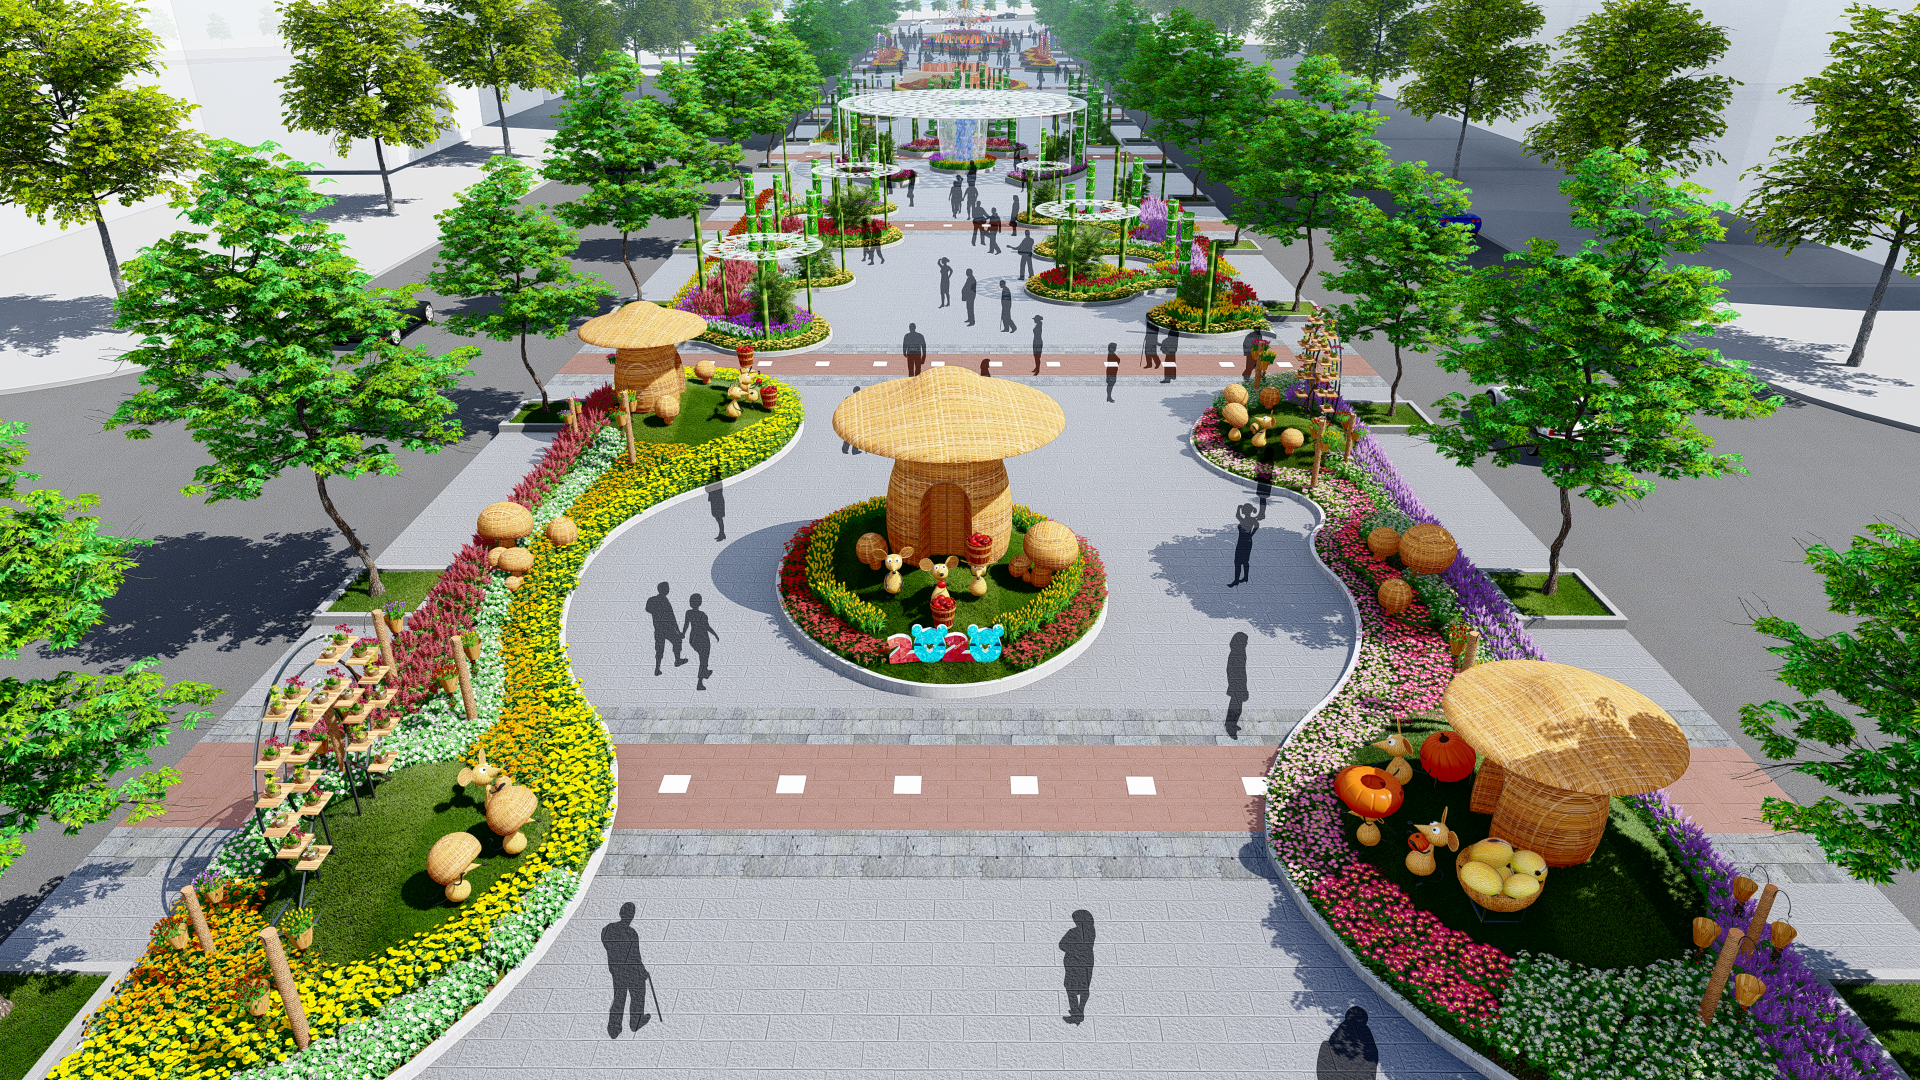 Đường hoa Nguyễn Huệ 2020 là đường hoa thứ 17 được thực hiện trong dịp Tết cổ truyền tại trung tâm TP.Hồ Chí Minh, kể từ năm 2004.